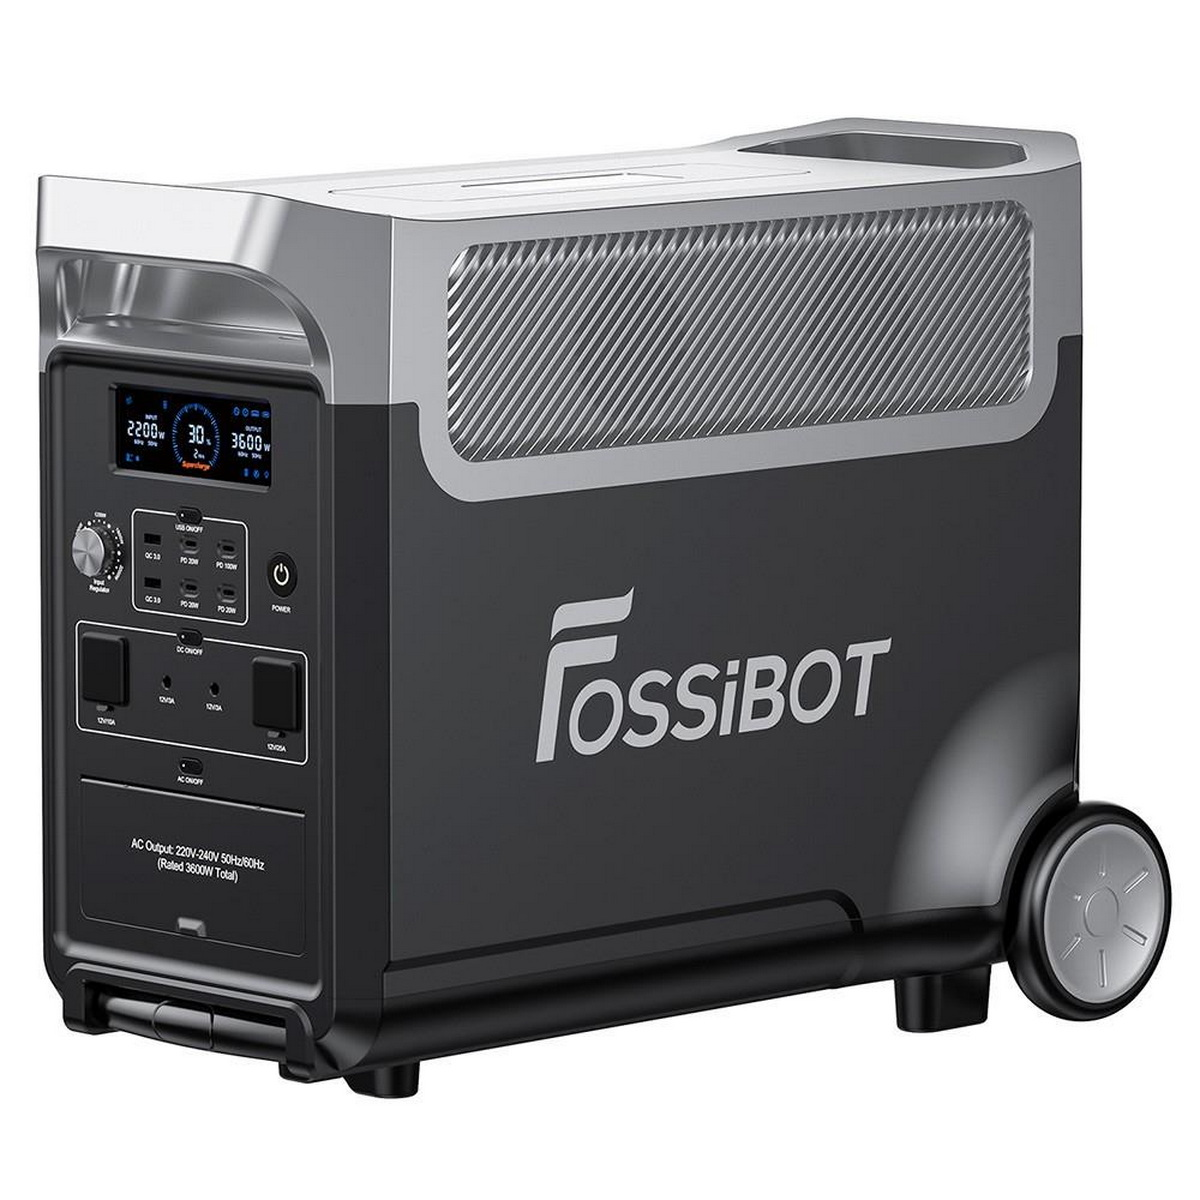 3840Wh Stromzeuger Schwarz F3600 FOSSIBOT